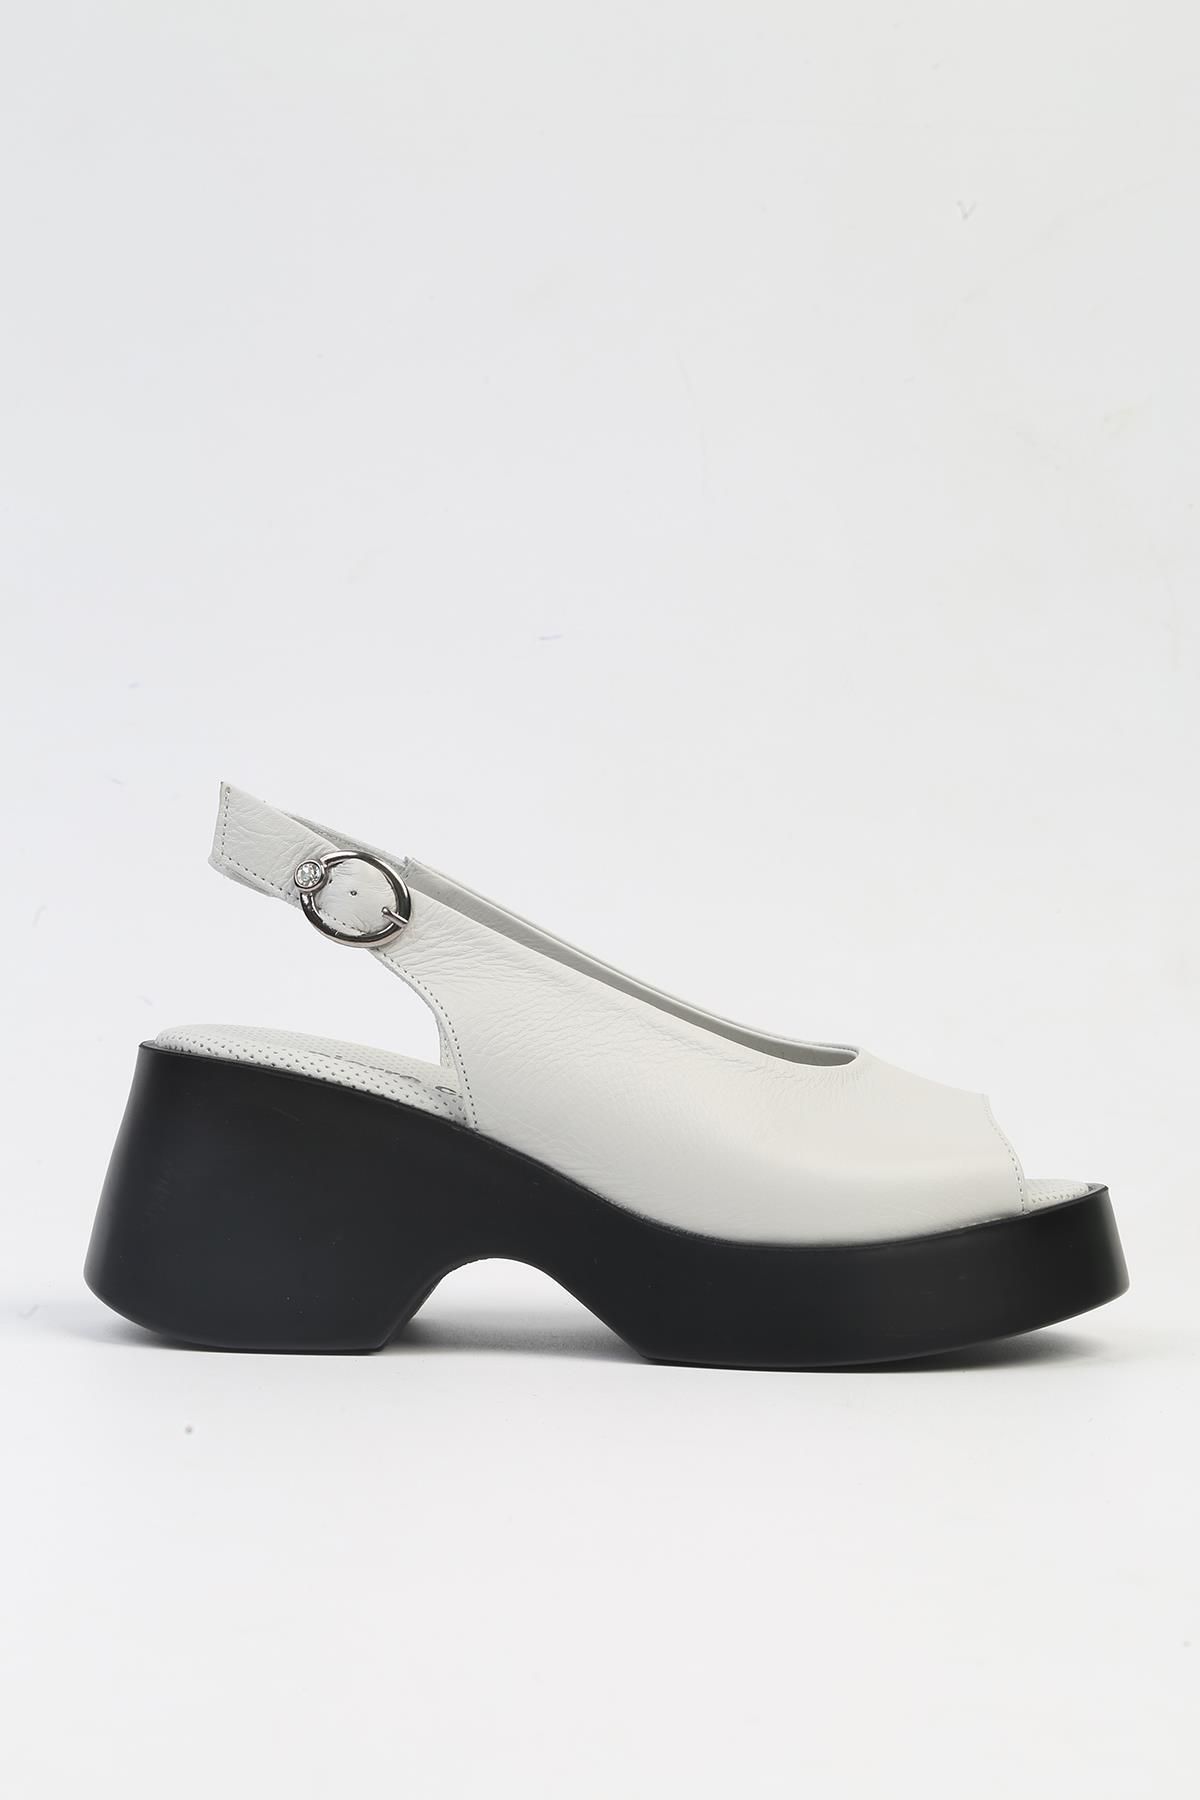 Pierre Cardin ® | PC-7199- 3968 Açık Gri-Kadın Topuklu Ayakkabı